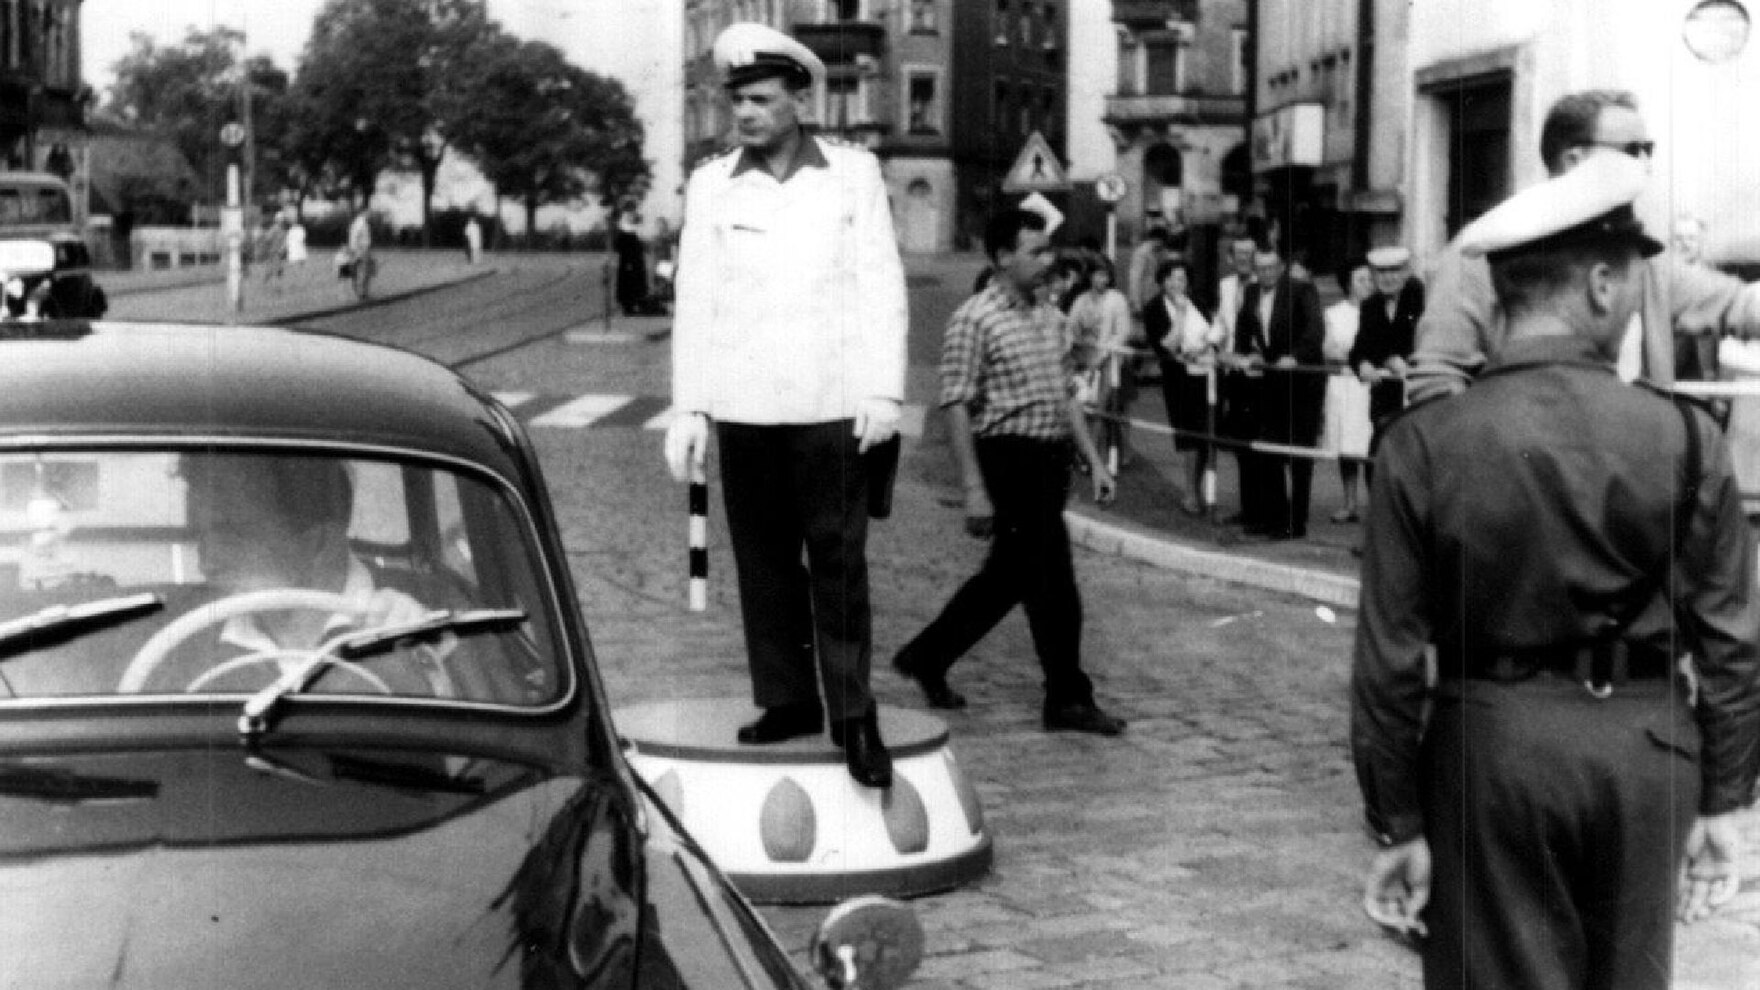 Auf dem Schwarz-Weiß-Foto ist ein Mann mit weißer Uniform eines Verkehrspolizisten auf einem Podest an einer Kreuzung zu sehen. Im Hintergrund sind viele Passanten, links vor dem Mann ein vorbeifahrendes Auto.